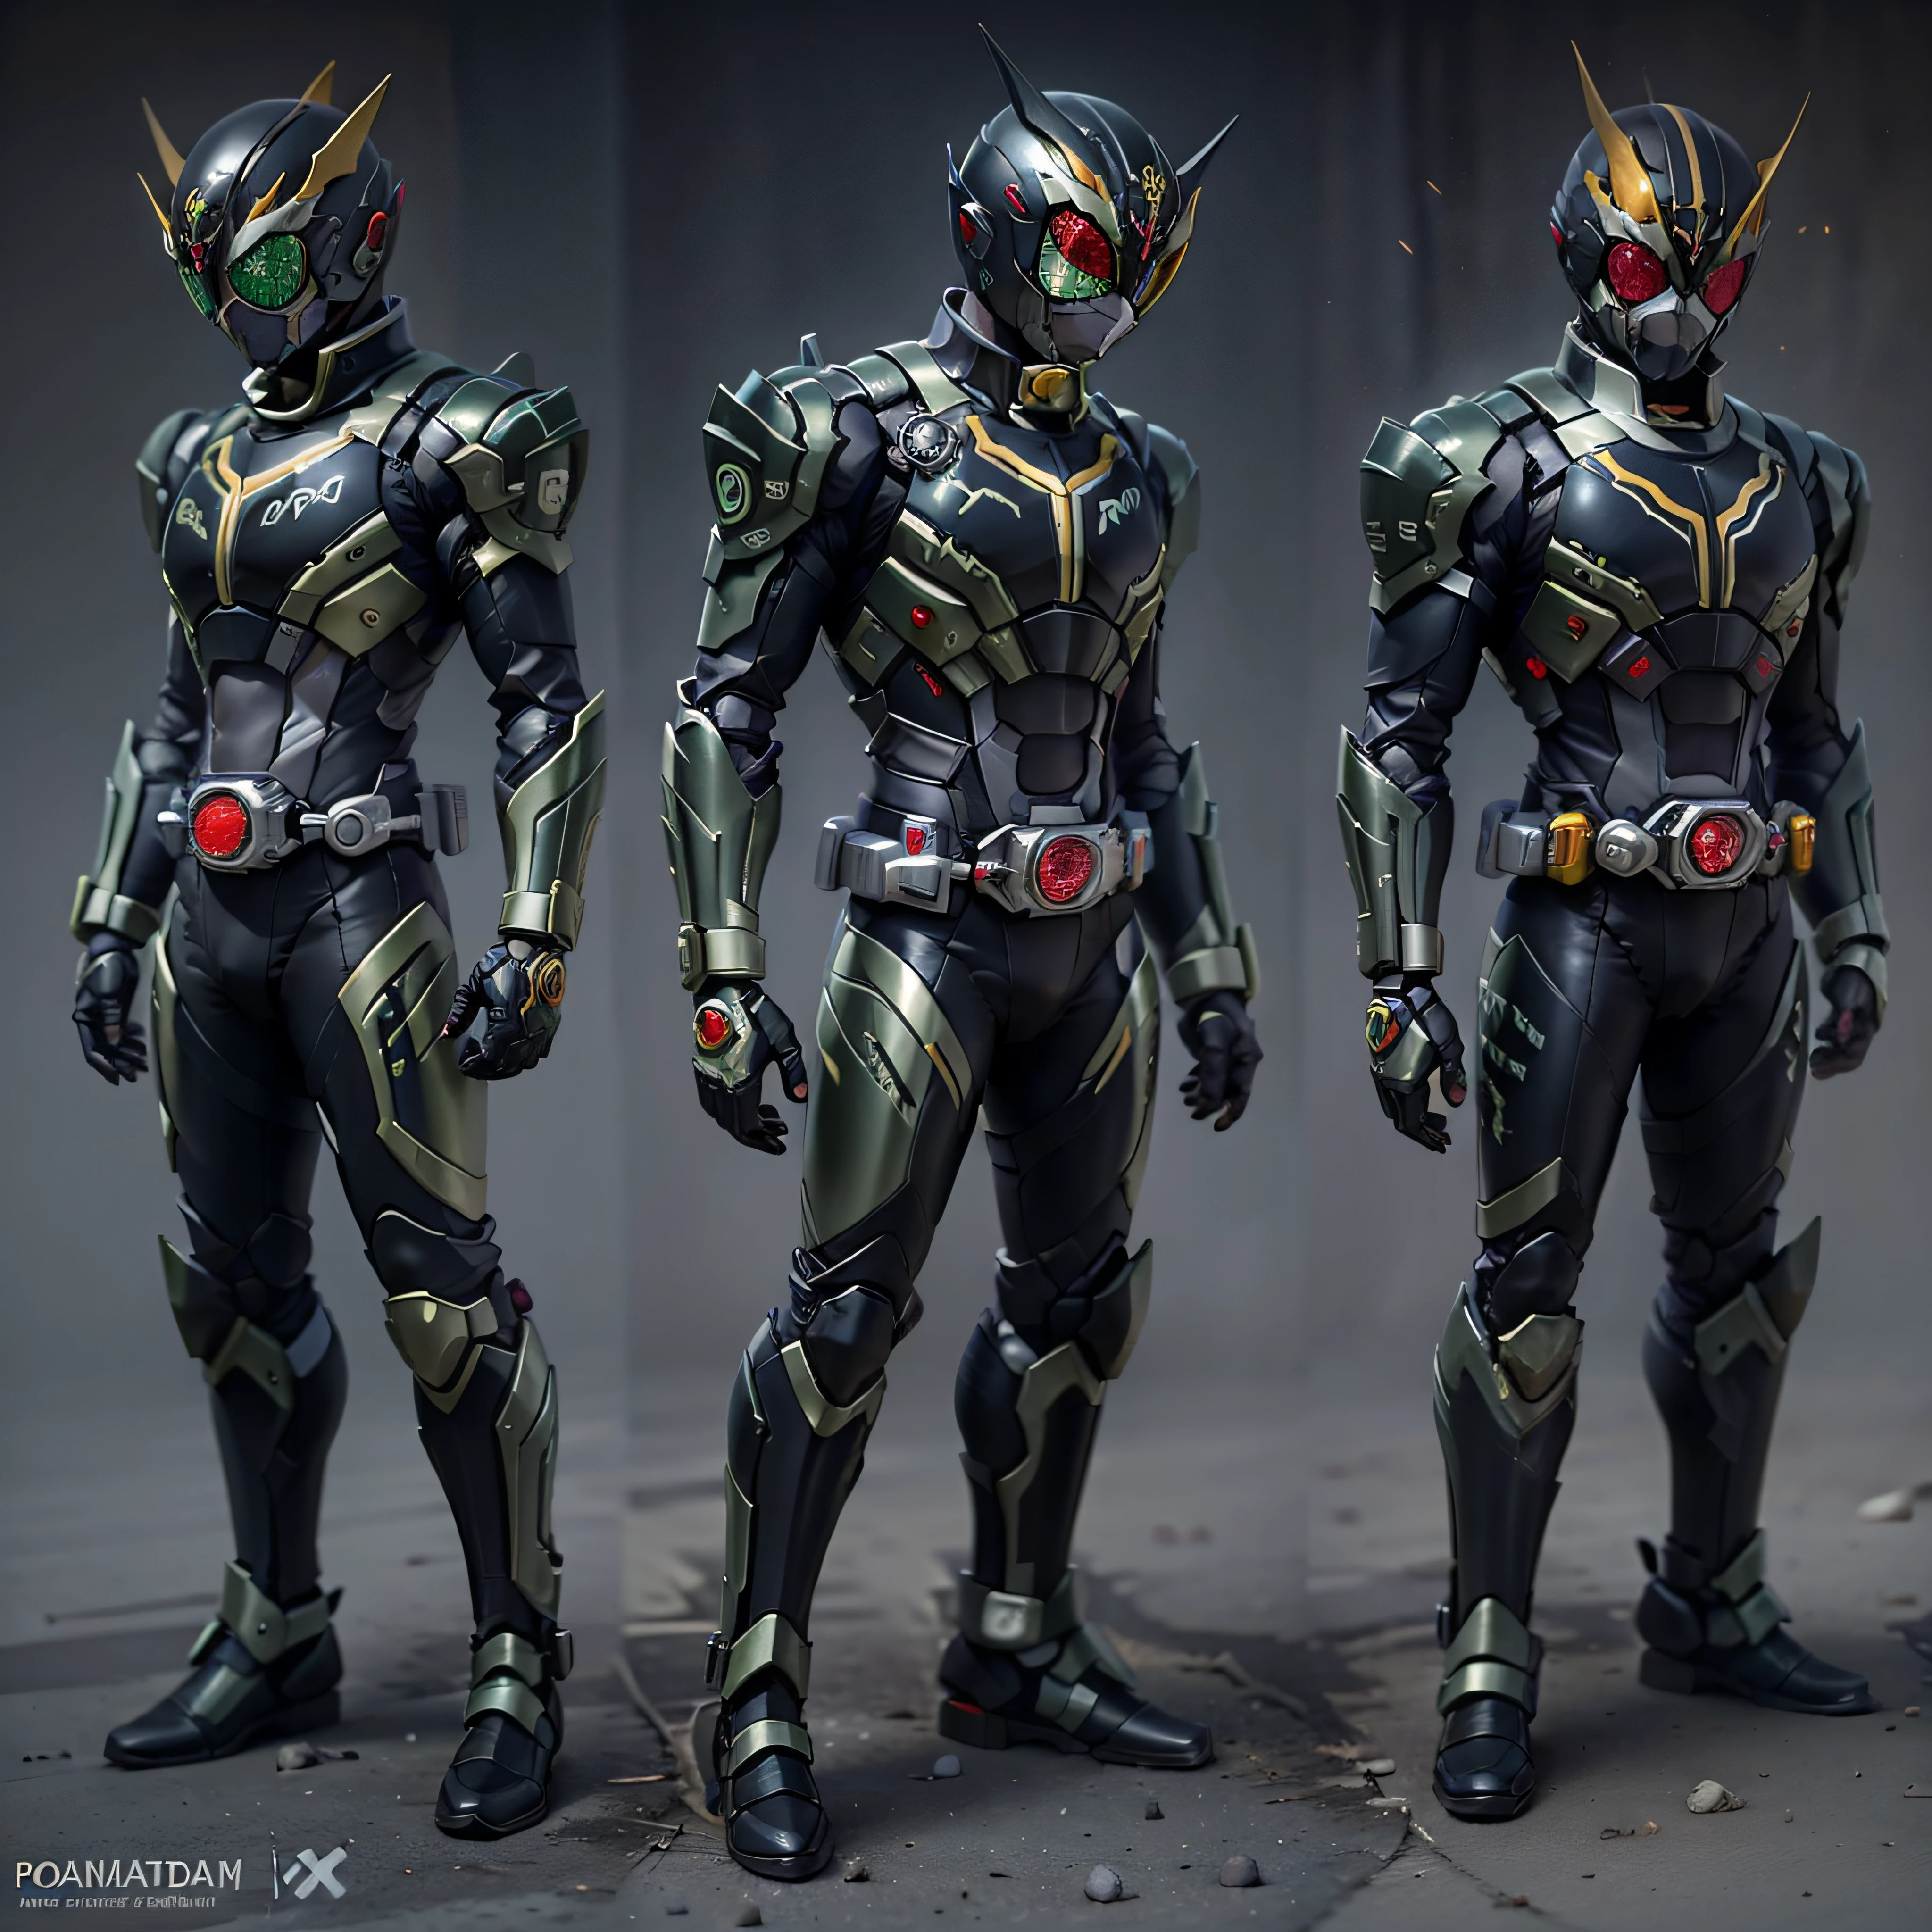 Black Kamen Rider, Silberne Rüstung, graue und schwarze Kleidung, black TechSuit, Geheimagent, Roboter